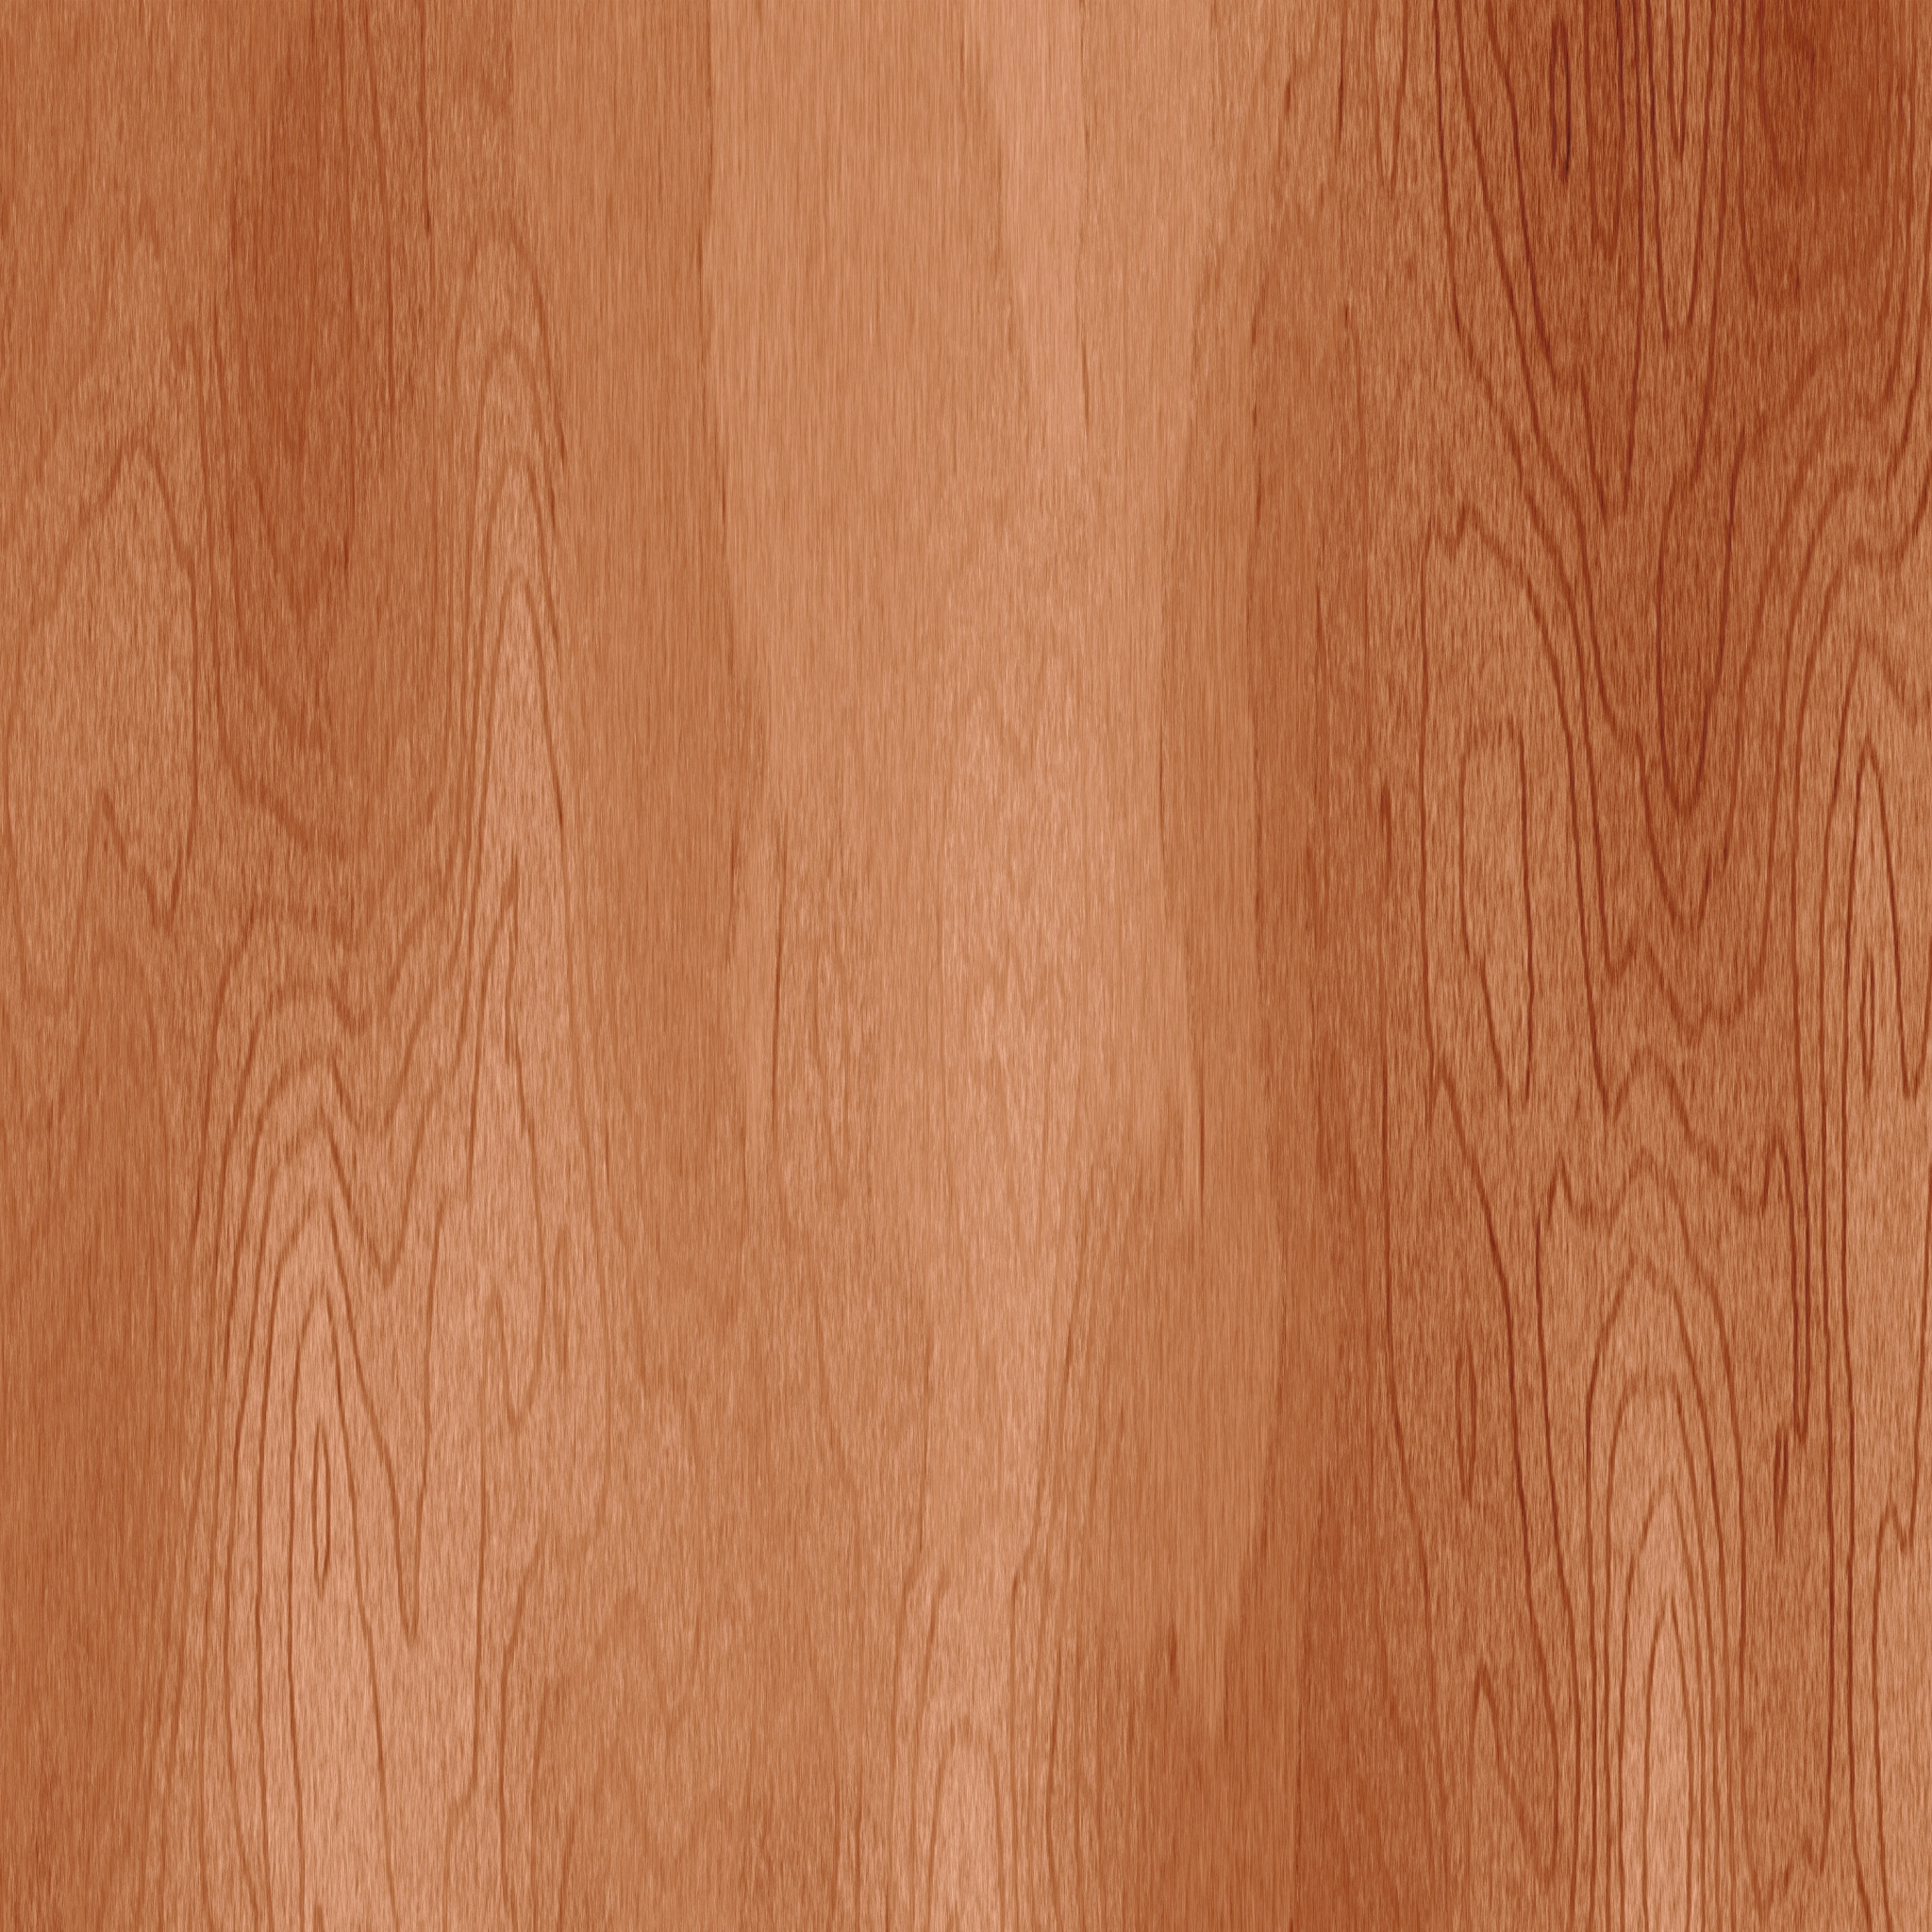 Wood grain ipad wallpaper danasrhm.top